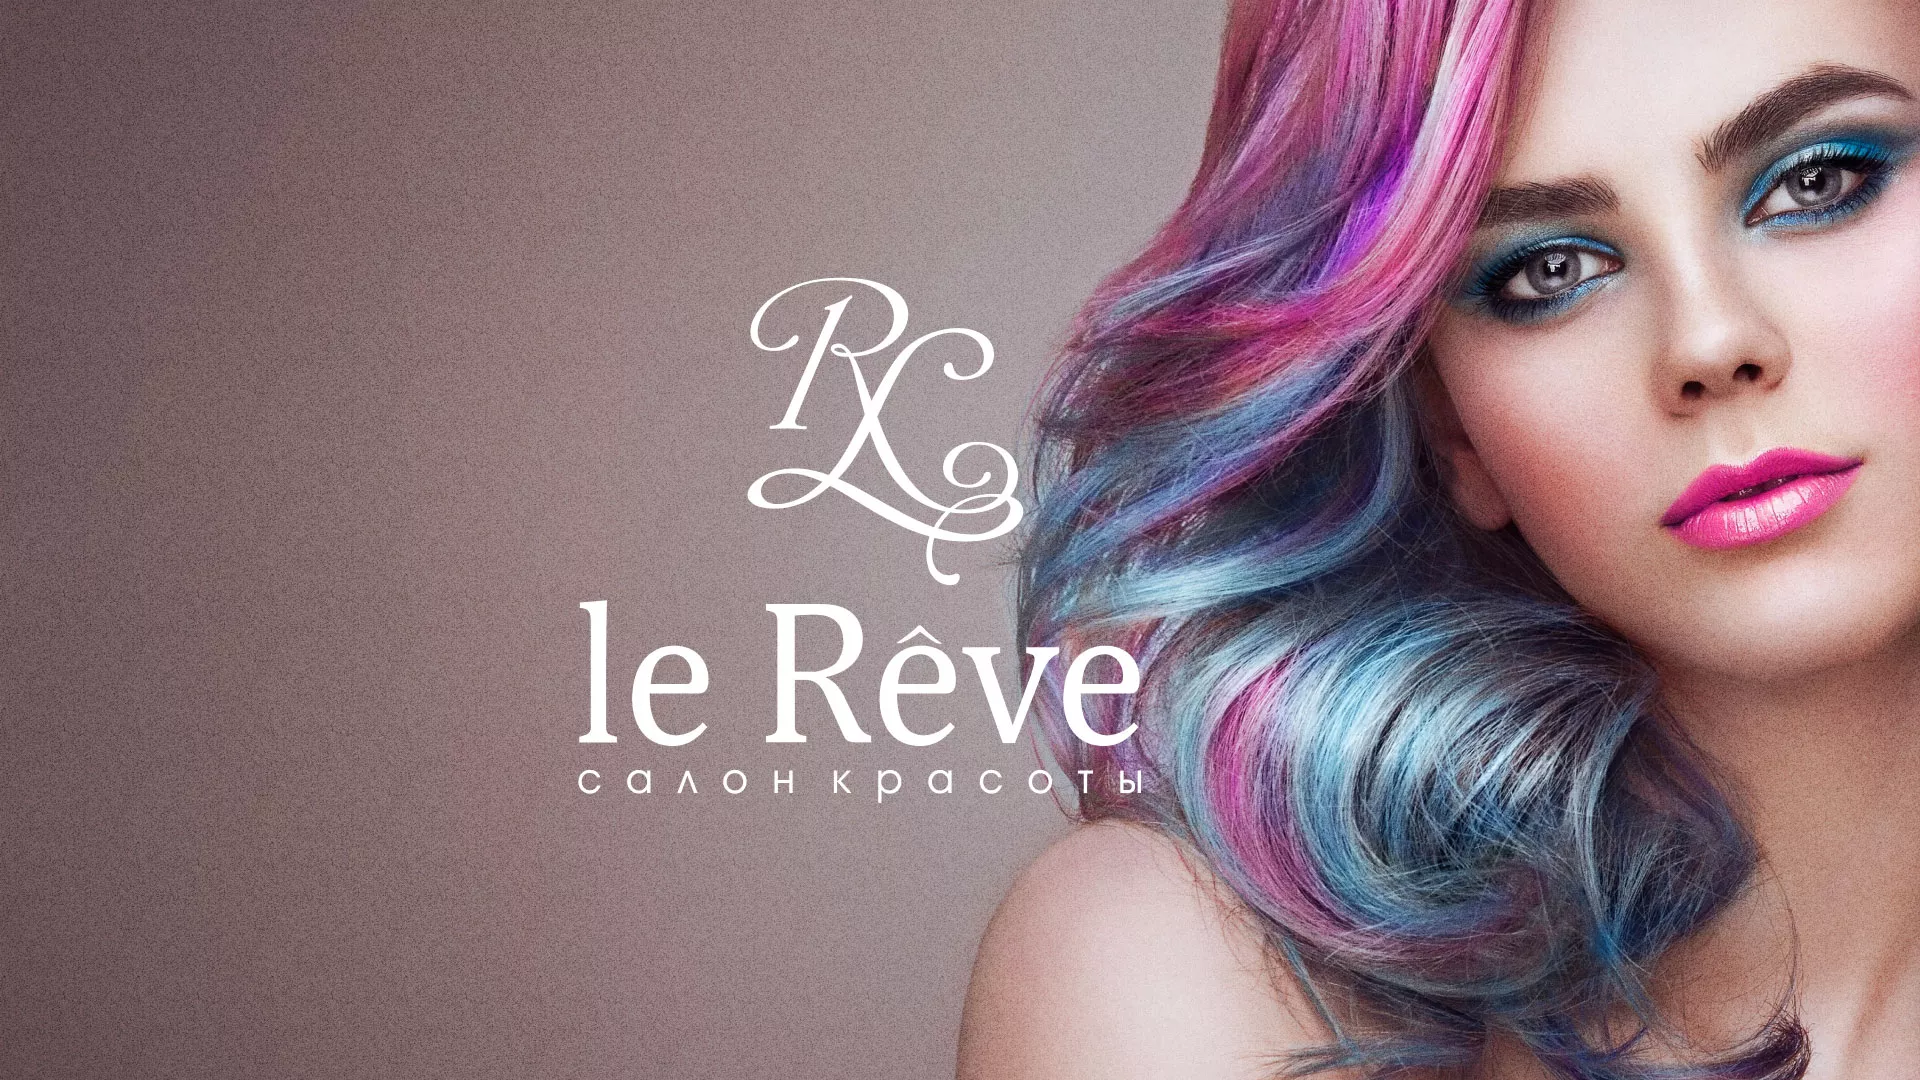 Создание сайта для салона красоты «Le Reve» в Скопине